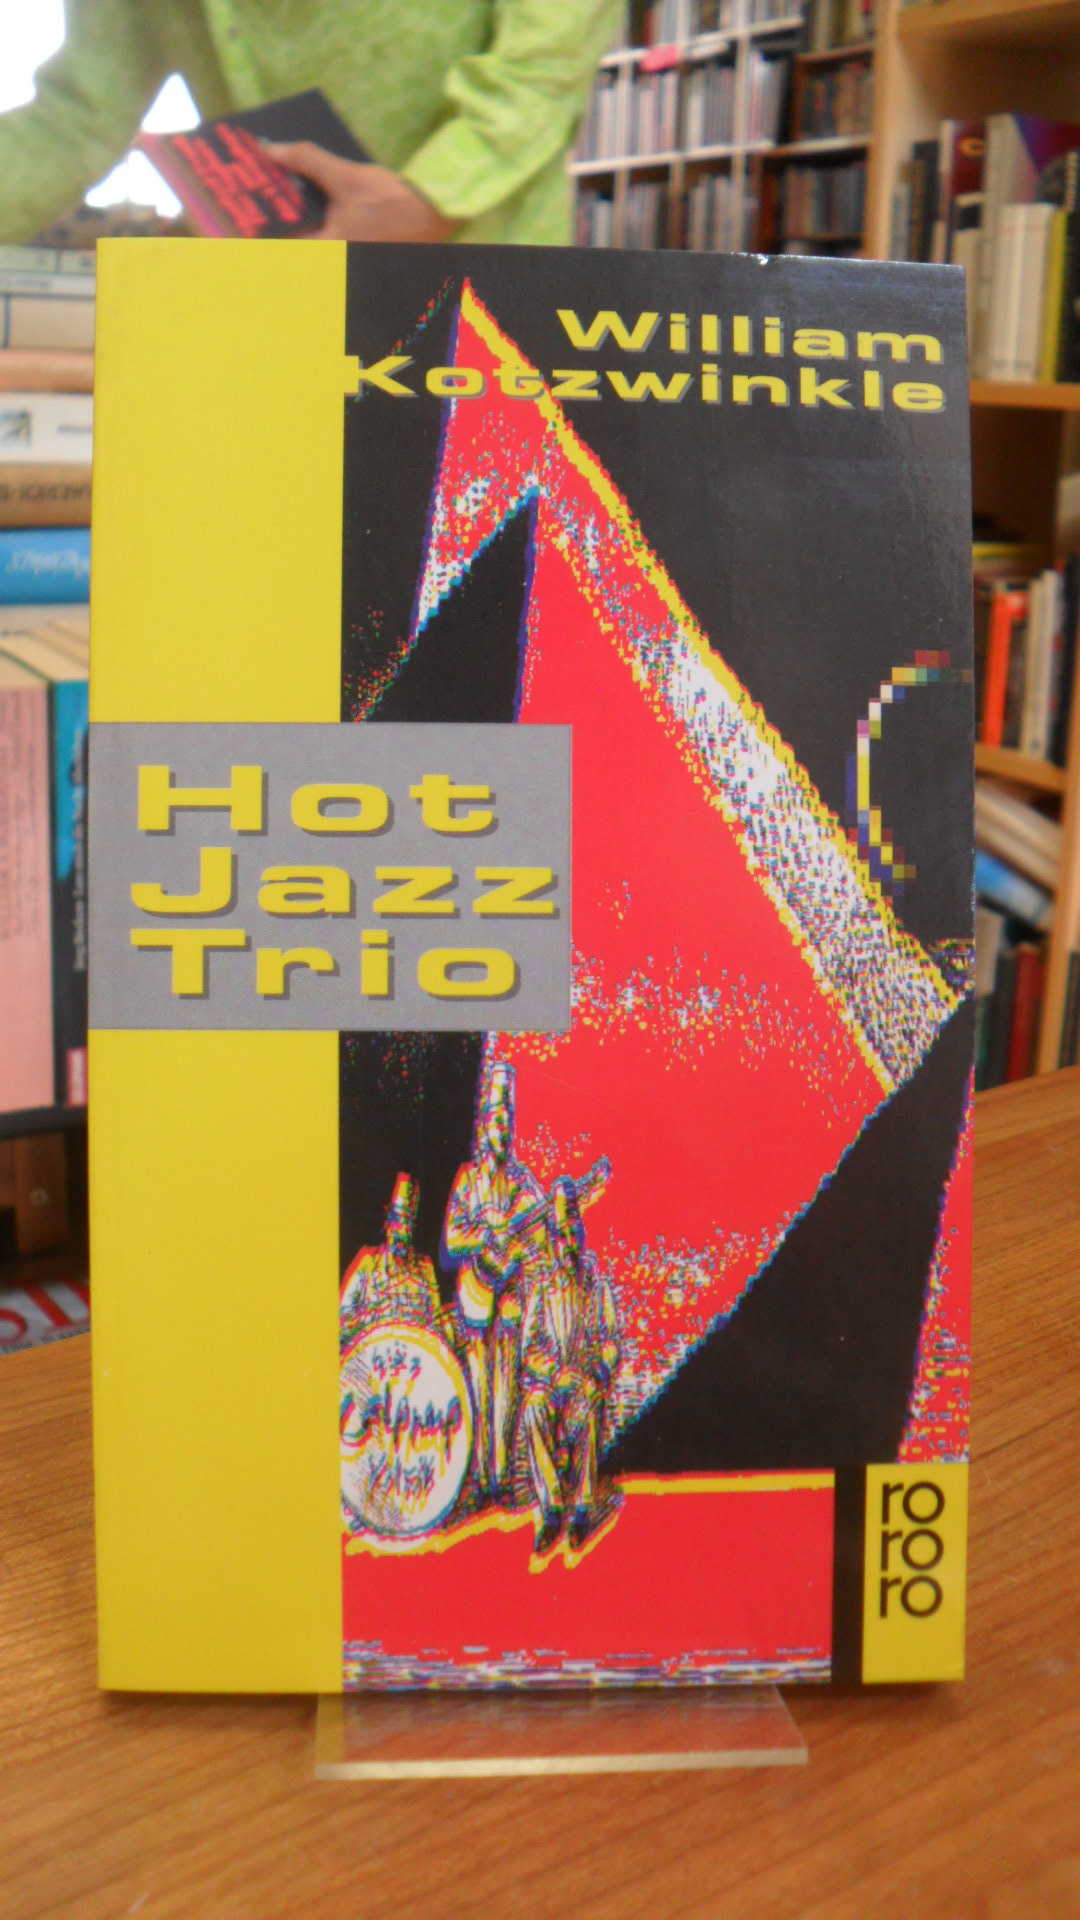 Kotzwinkle, Hot-Jazz-Trio – Stories – Mit Illustrationen von Joe Servello,